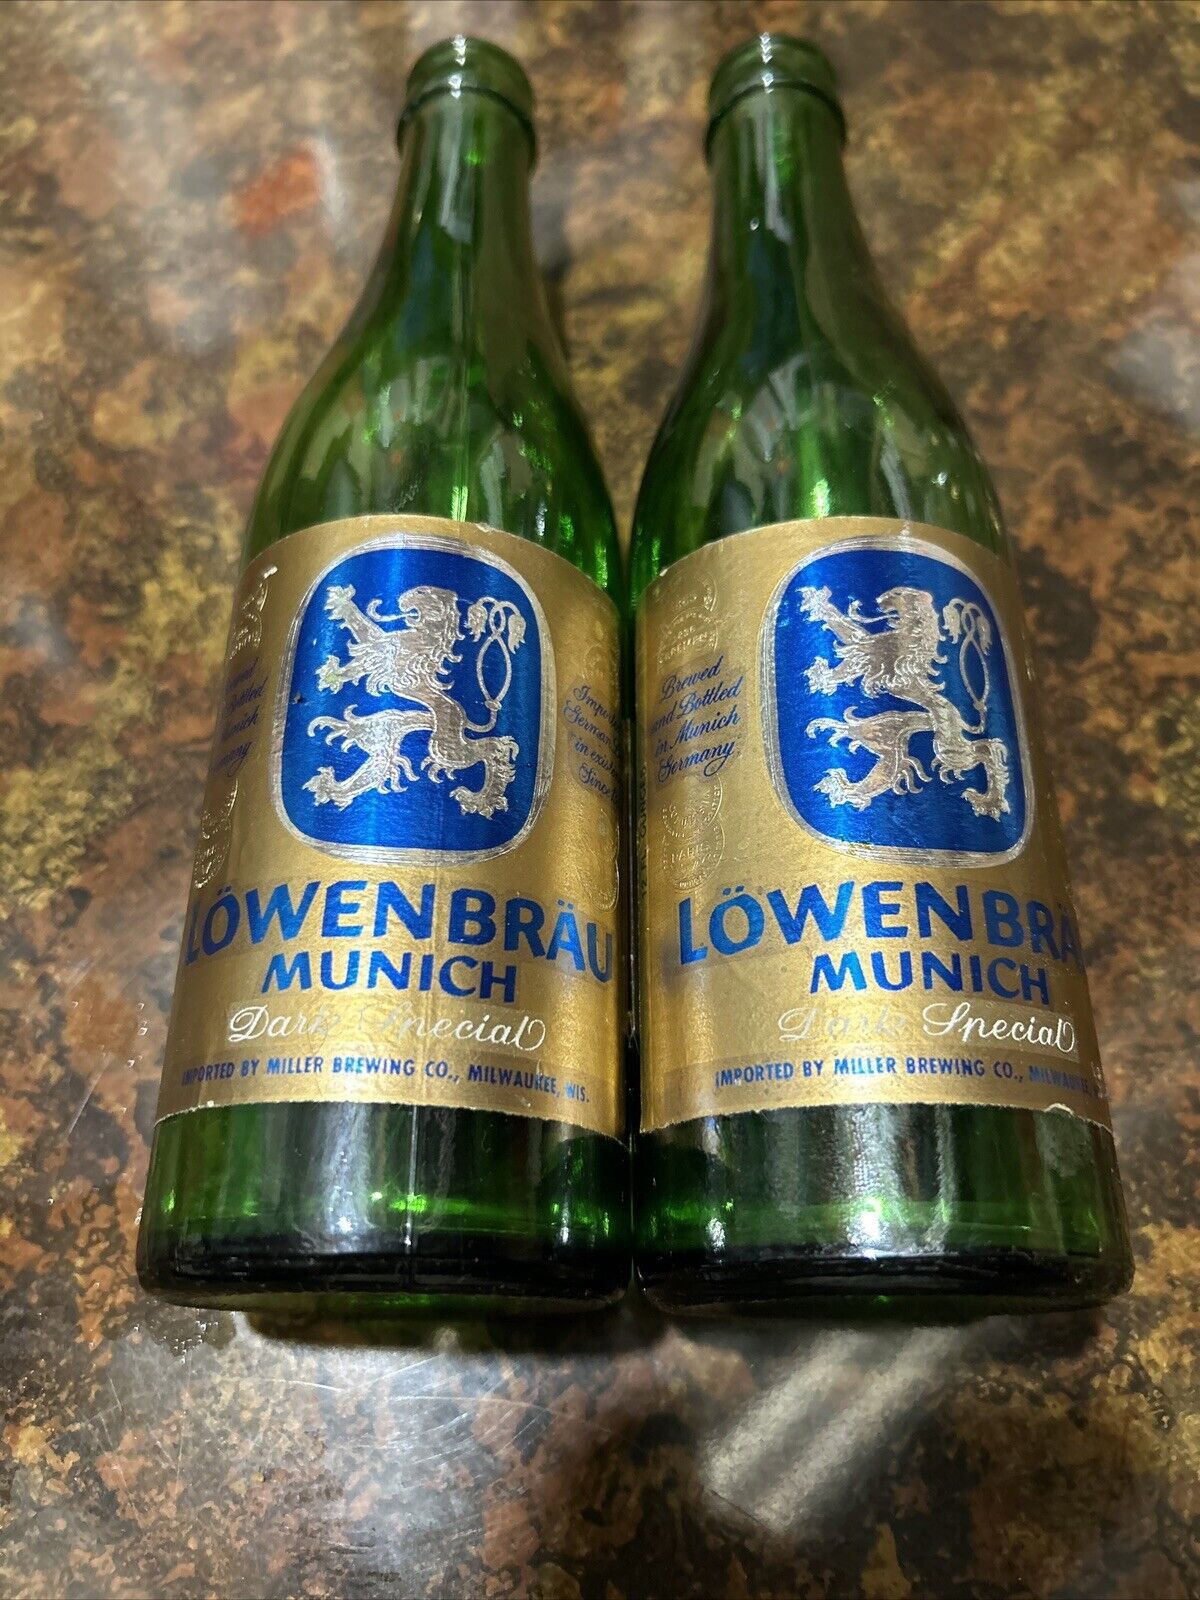 2 Lowenbrau Dark Special Bottles 